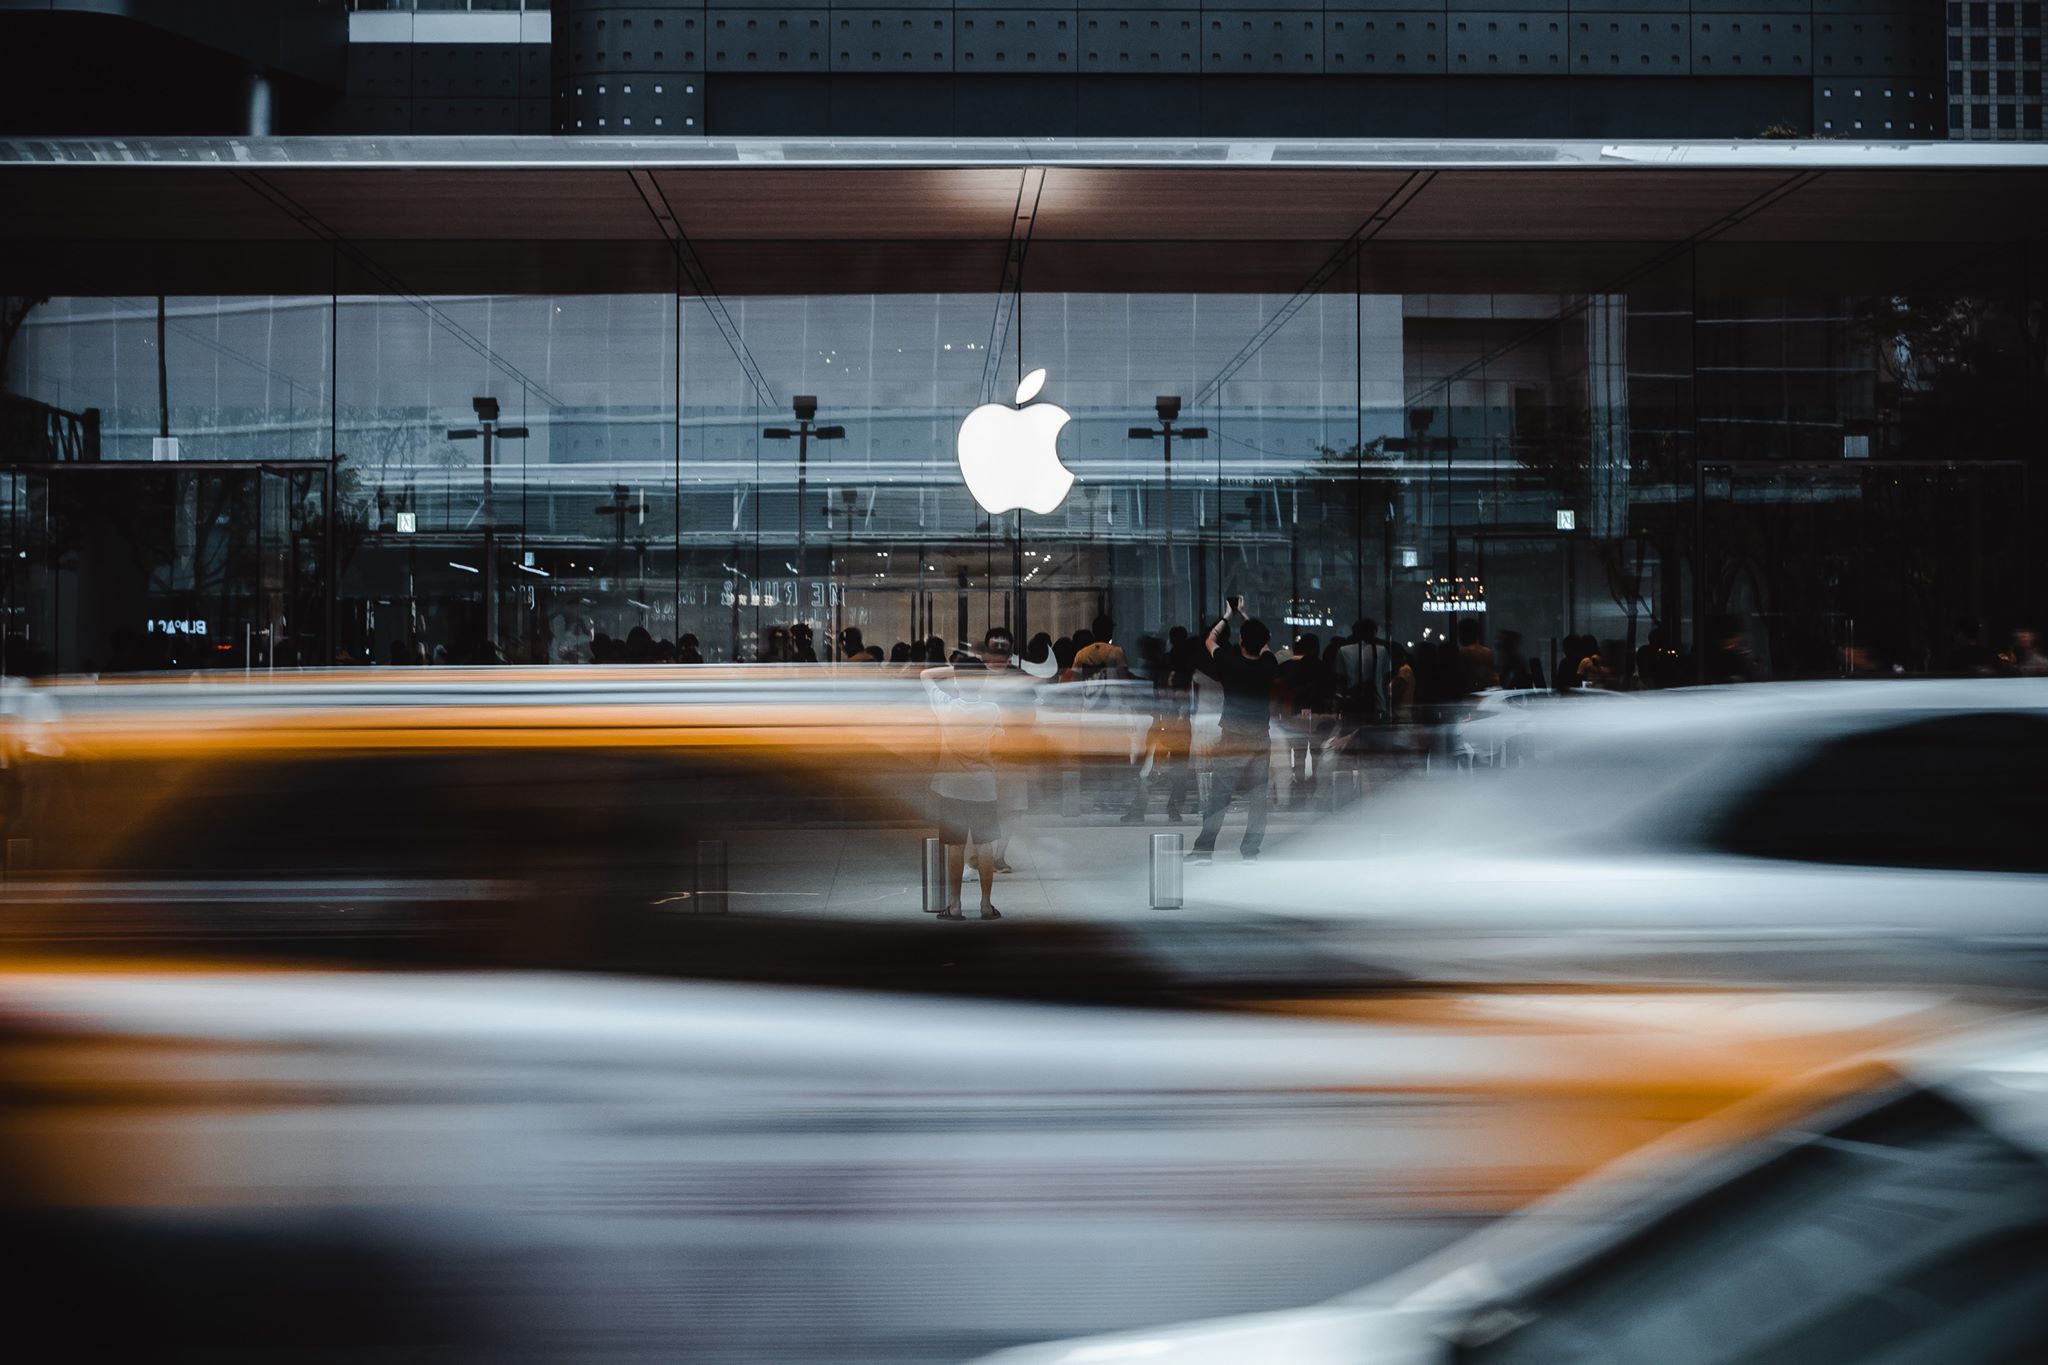 Doanh thu Q3/2019 của Apple là doanh thu Quý 3 cao nhất từ trước đến nay, mặc dù doanh thu iPhone vẫn chưa phục hồi